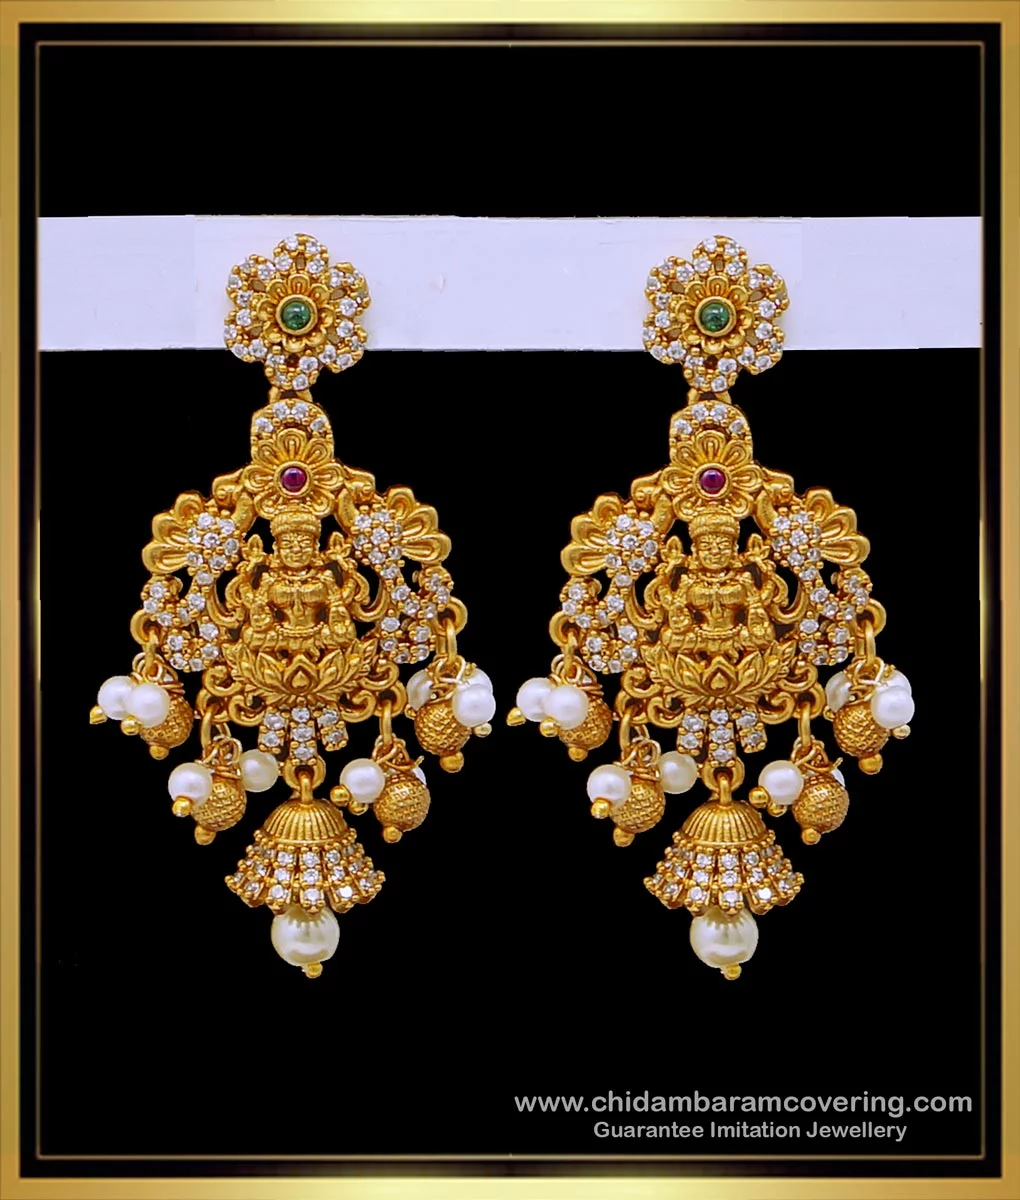 Camélia earrings Chanel Gold in Metal - 39993896